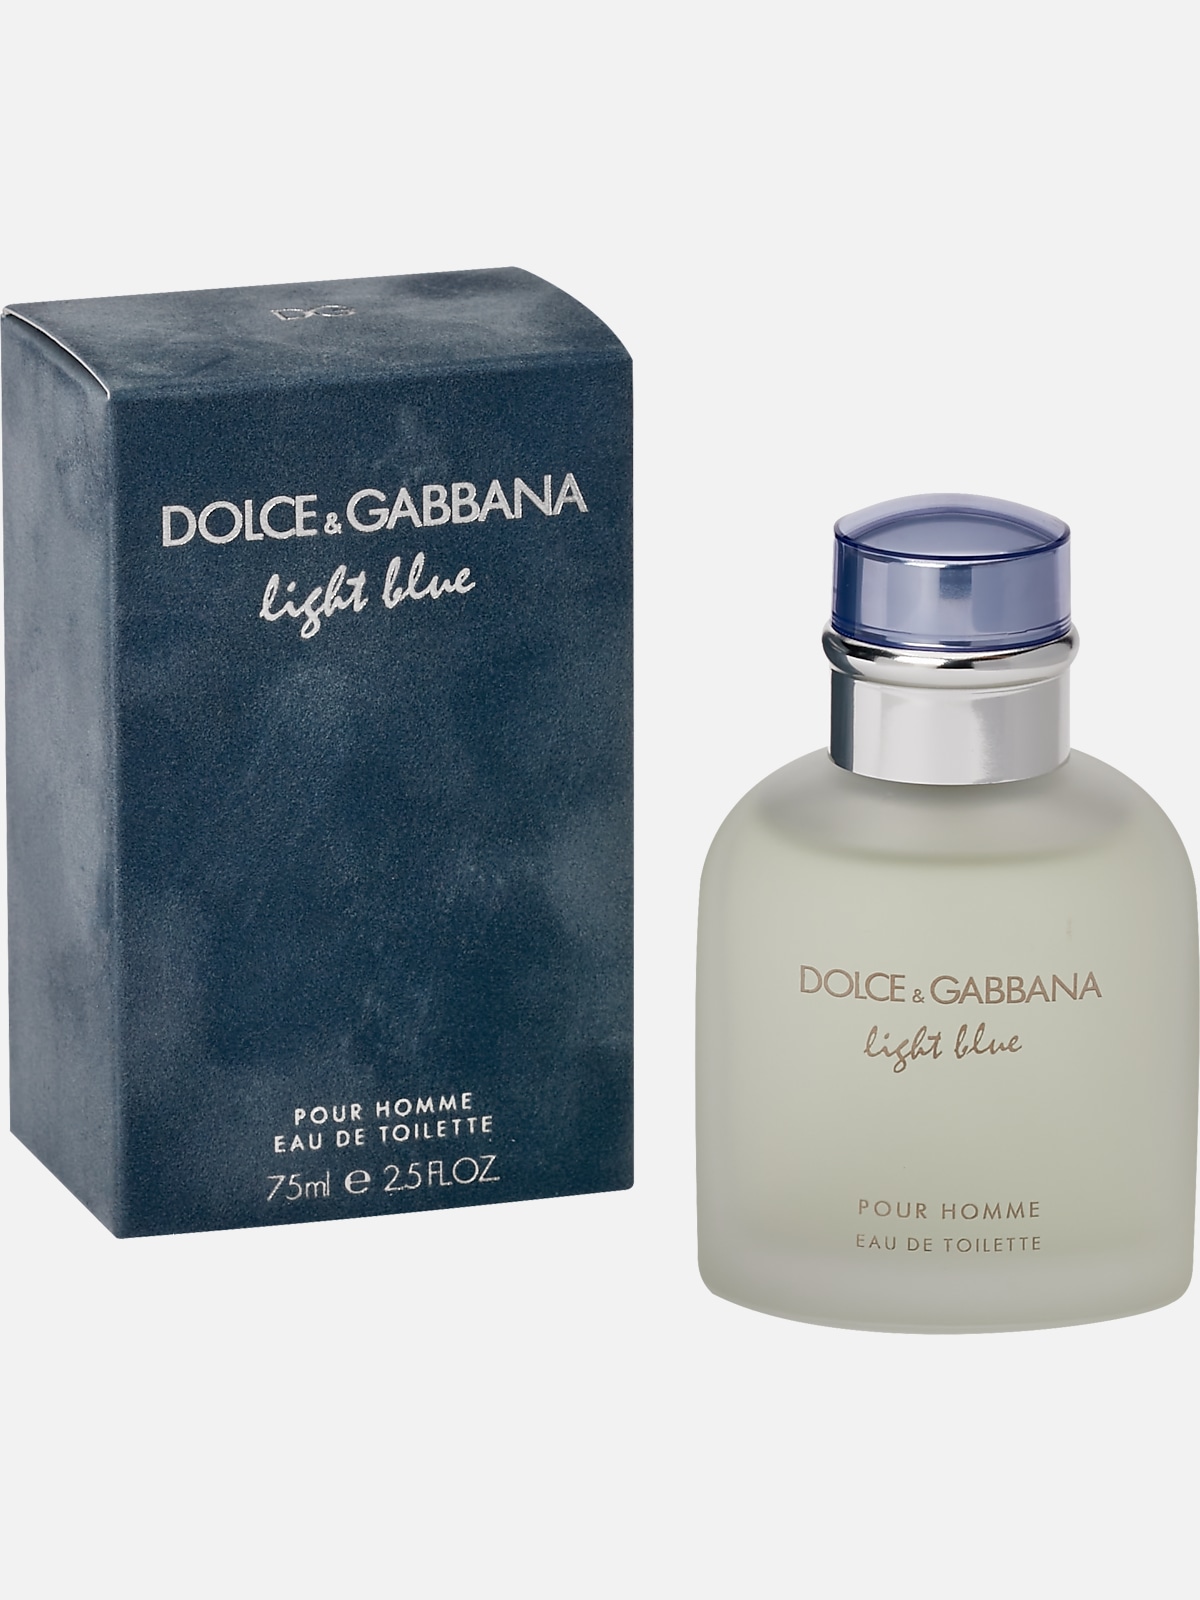 Dolce & Gabbana Light Blue Eau de Toilette Spray for Men - 2.5 oz